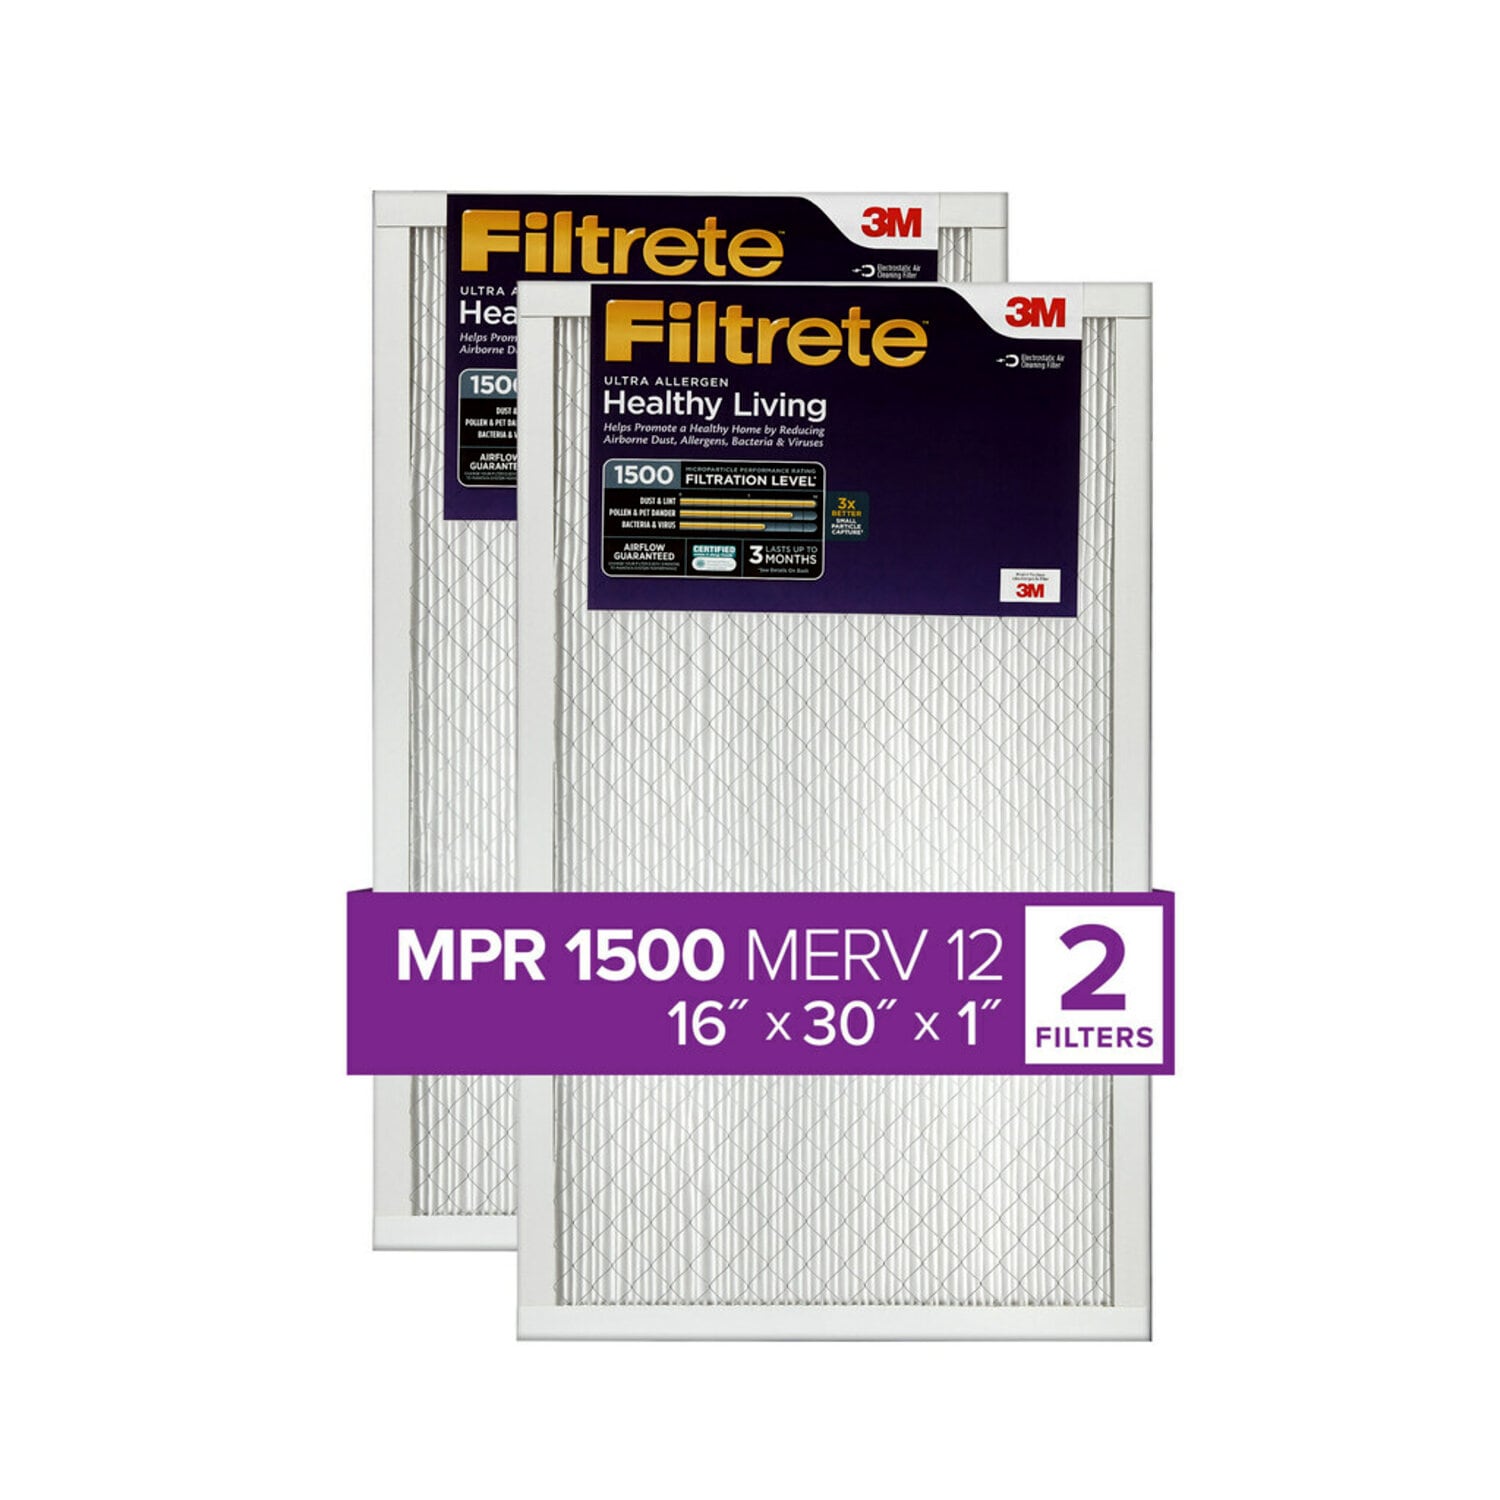 7100212155 - Filtrete Ultra Allergen Reduction Filter UR27-2PK-1E, 16 in x 30 in x 1 in (40.6 cm x 76.2 cm x 2.5 cm)